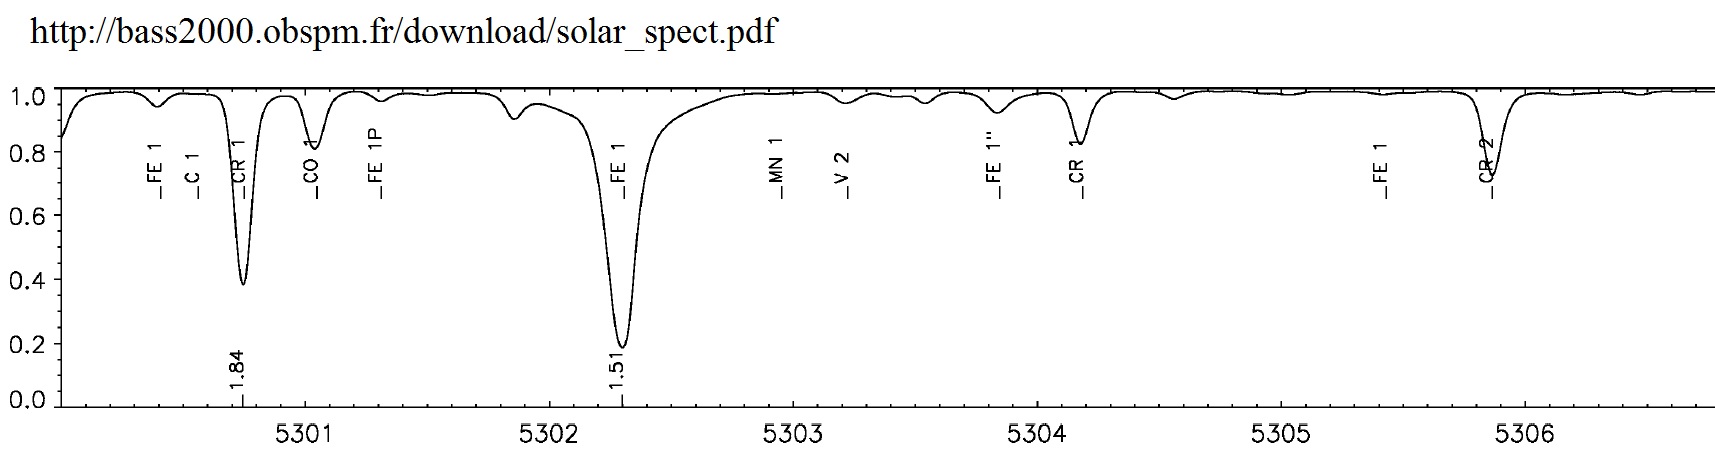 5304 solar spectrum.jpg